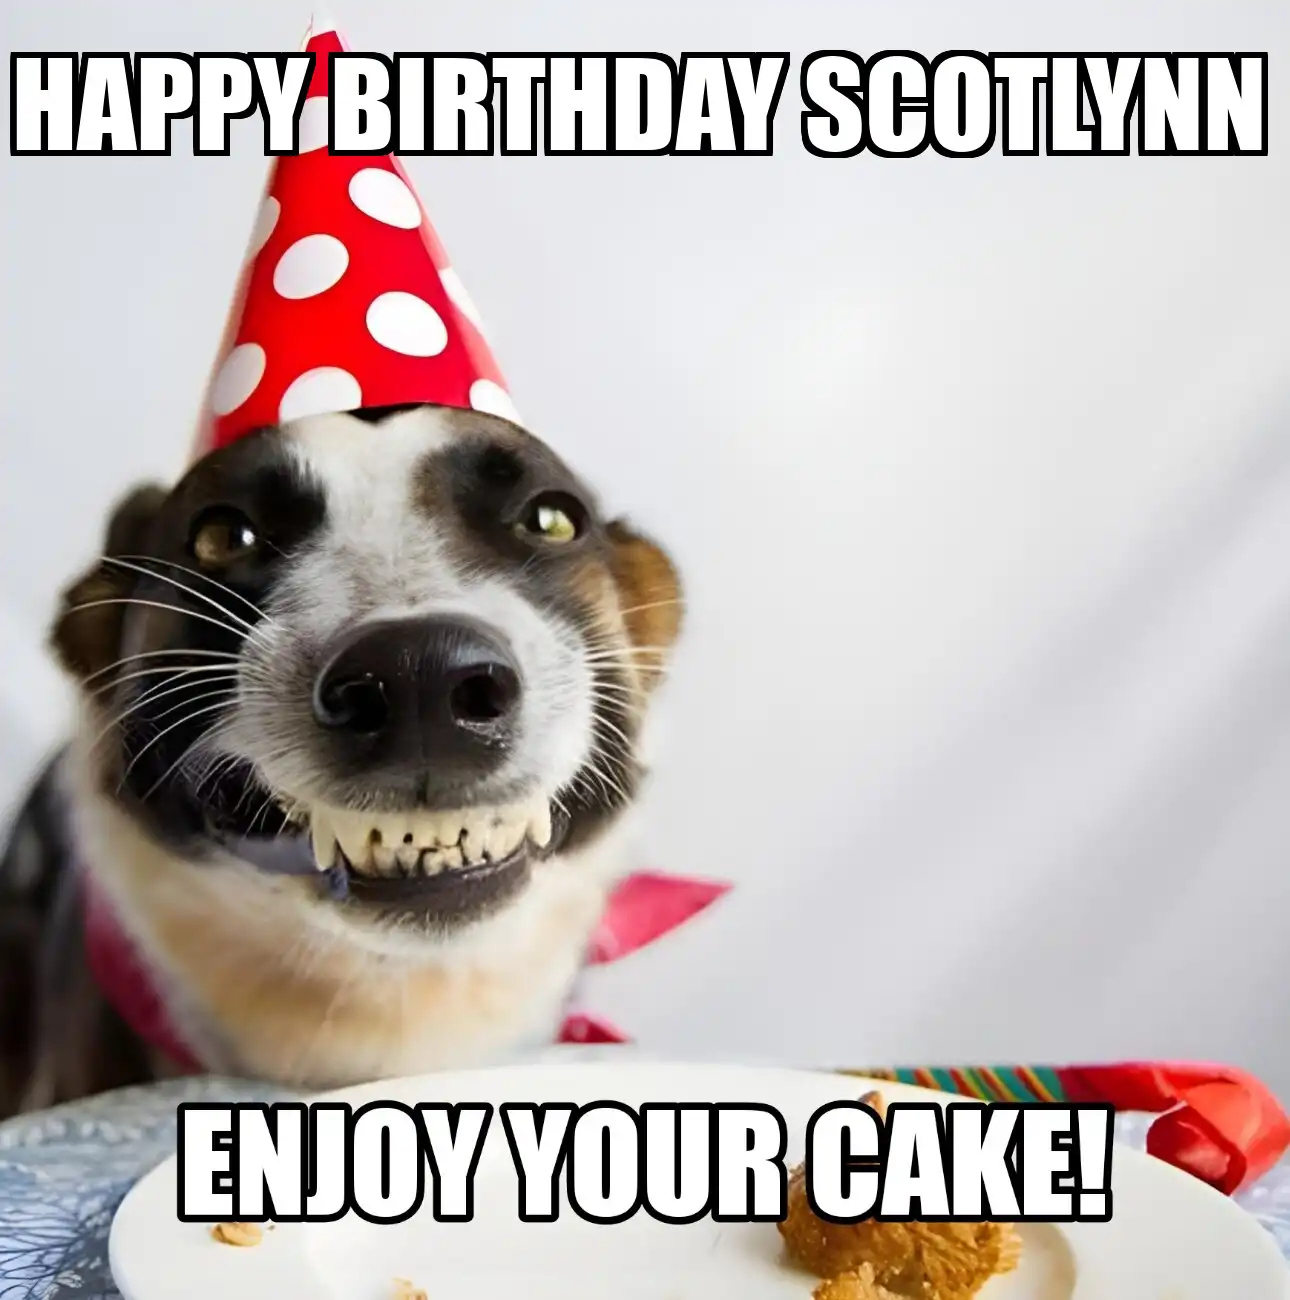 Happy Birthday Scotlynn Enjoy Your Cake Dog Meme